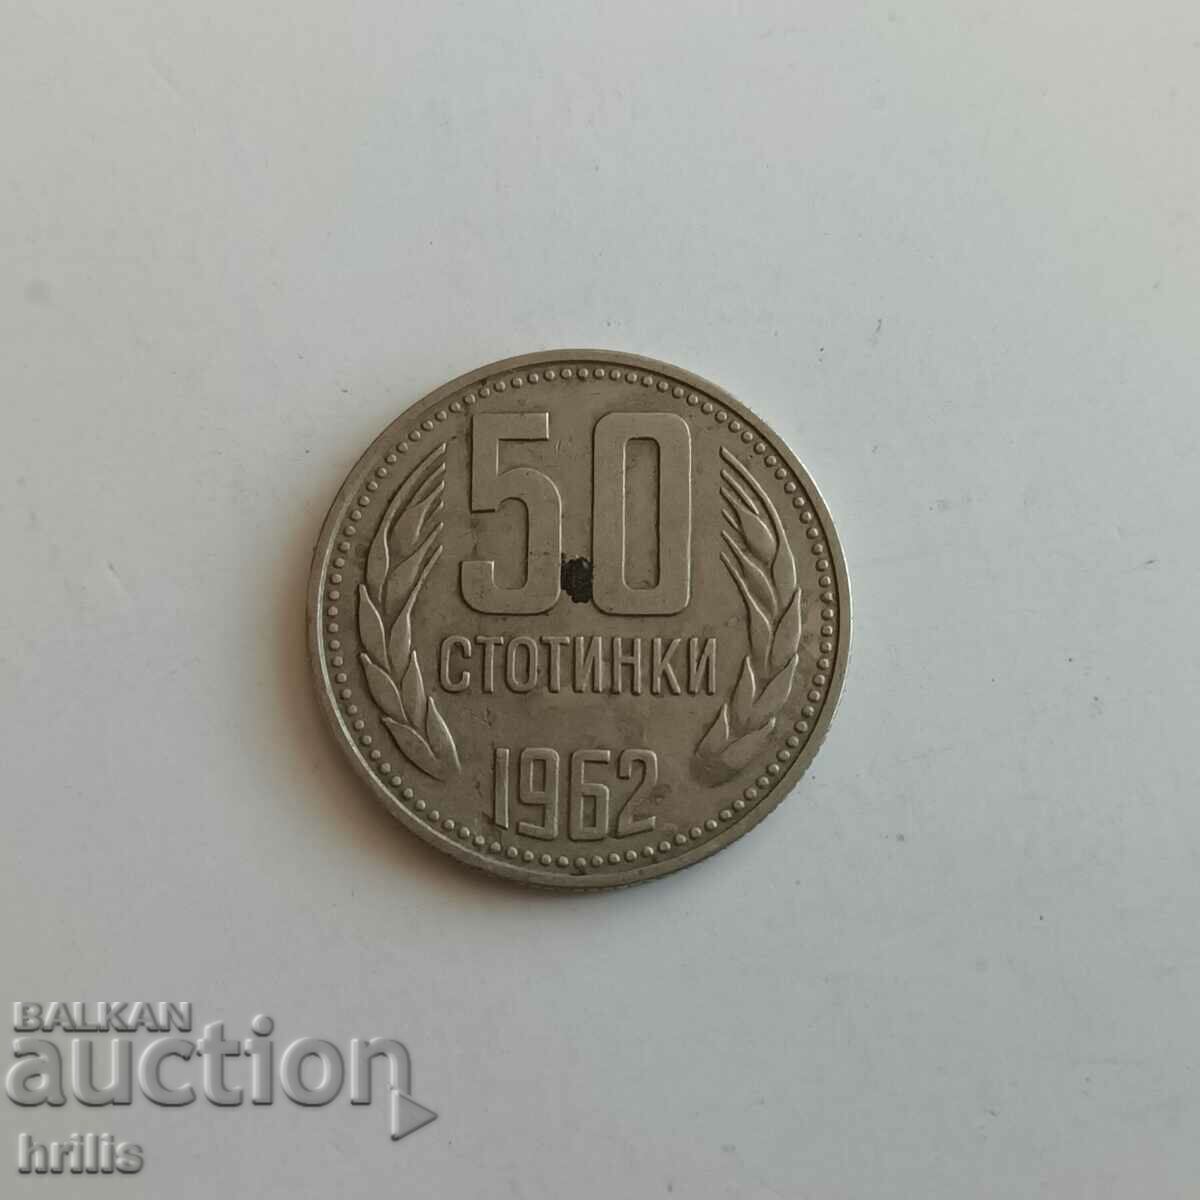 50 de cenți 1962